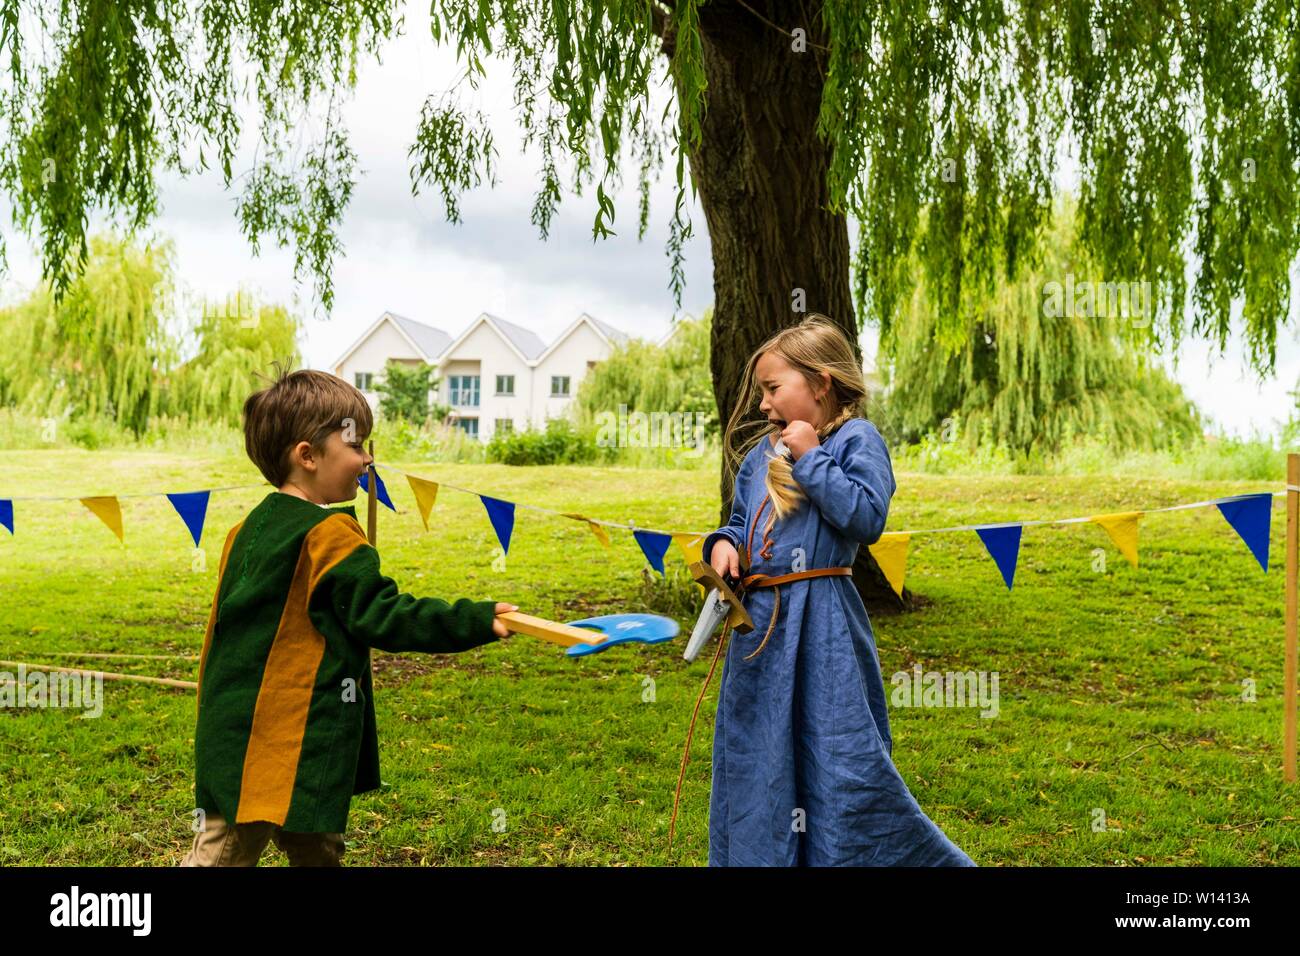 Deux enfants, garçon, 4-5 ans, et une fille, 5-6 ans, vêtu de vêtements médiévaux et les combats de manière ludique à l'épée et hache sur l'herbe. Banque D'Images